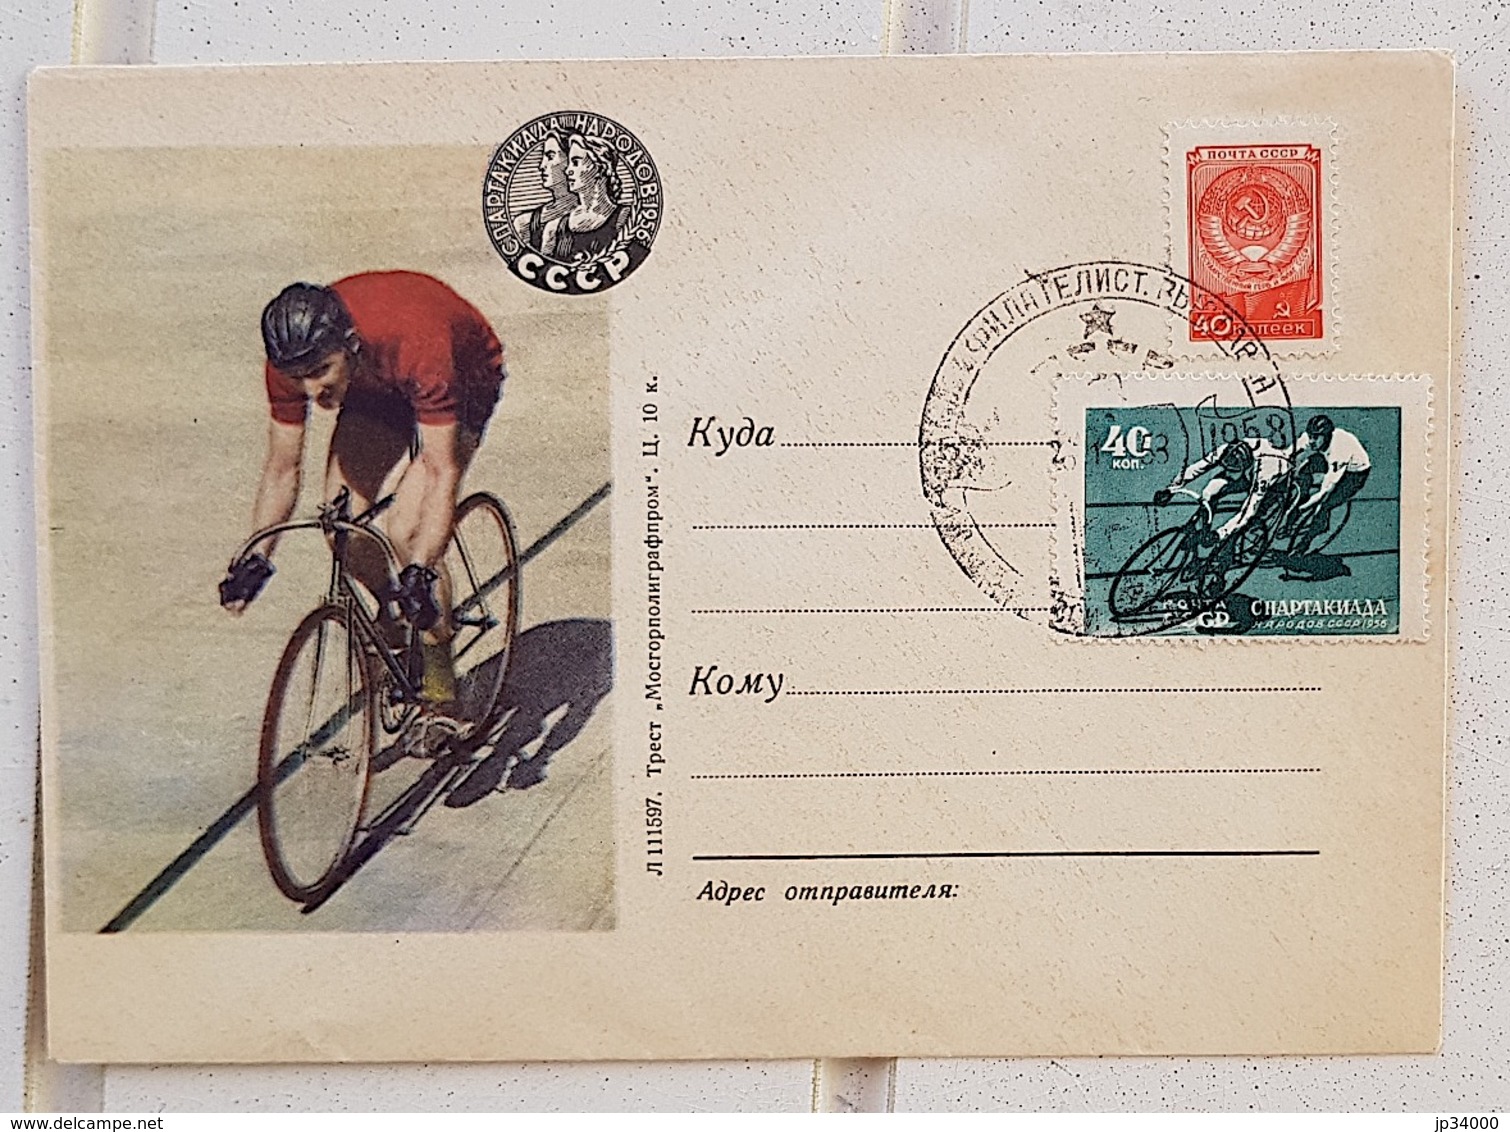 URSS, RUSSIE Cyclisme, Velo, Bicyclette. Championnat Sur Piste. Entier Postal émis En 1958 Avec Cachet Temporaire - Ciclismo